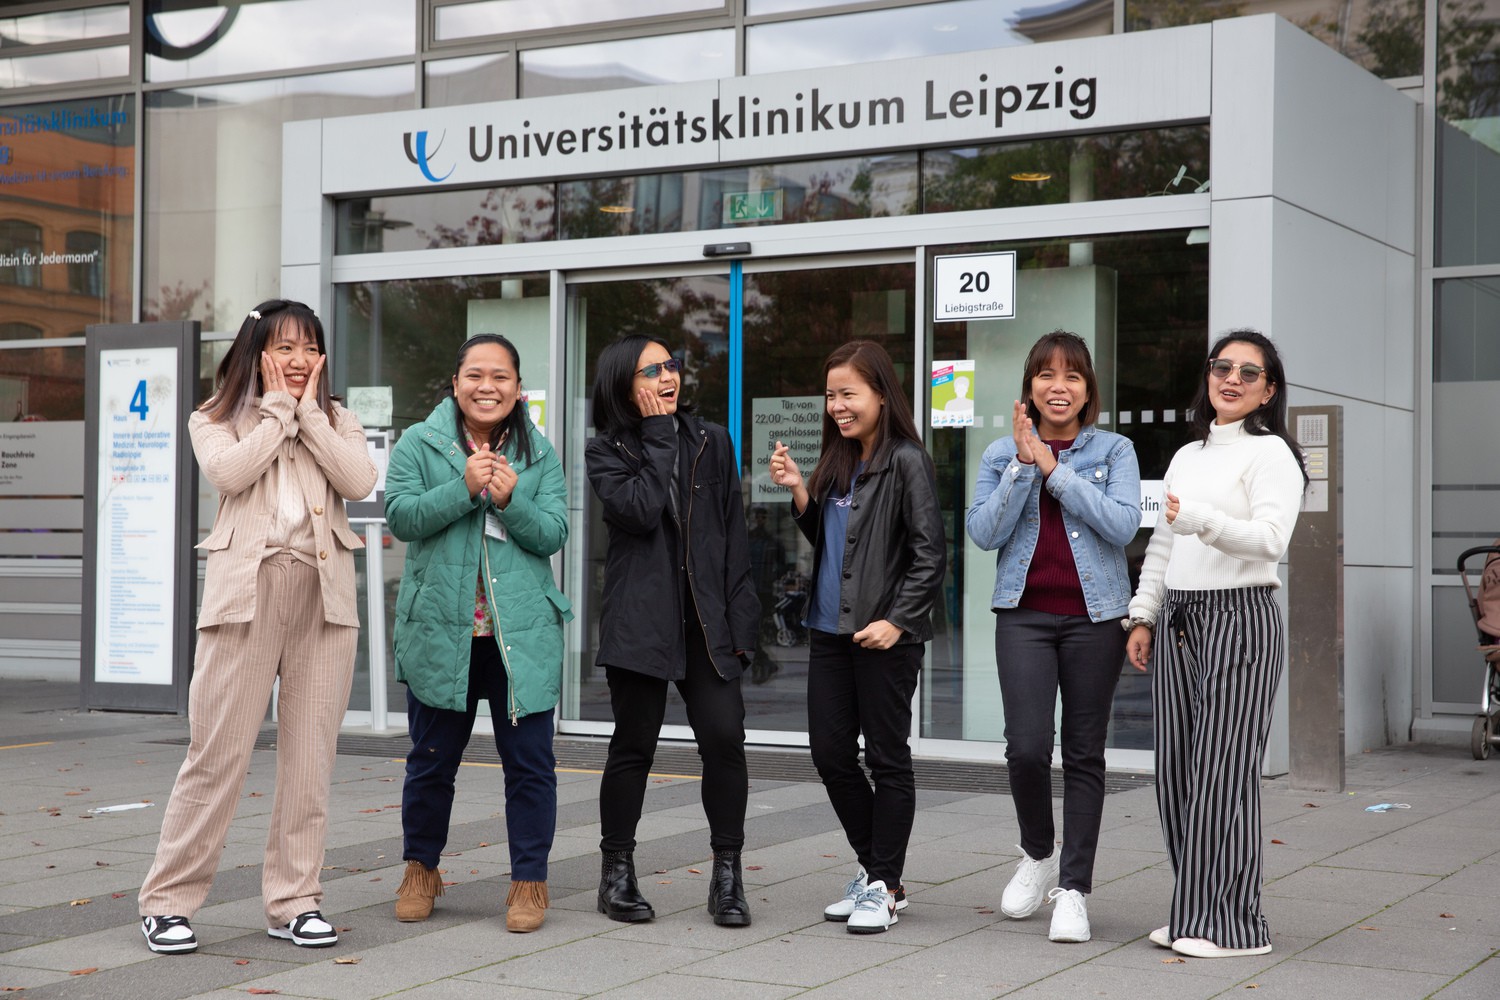 Mabuhay - herzlich willkommen! Das Uniklinikum Leipzig begrüßt sechs neue Kolleginnen von den Philippinen, die jetzt die Pflegeteams verstärken werden. Weitere 16 sollen in den nächsten Monaten folgen.